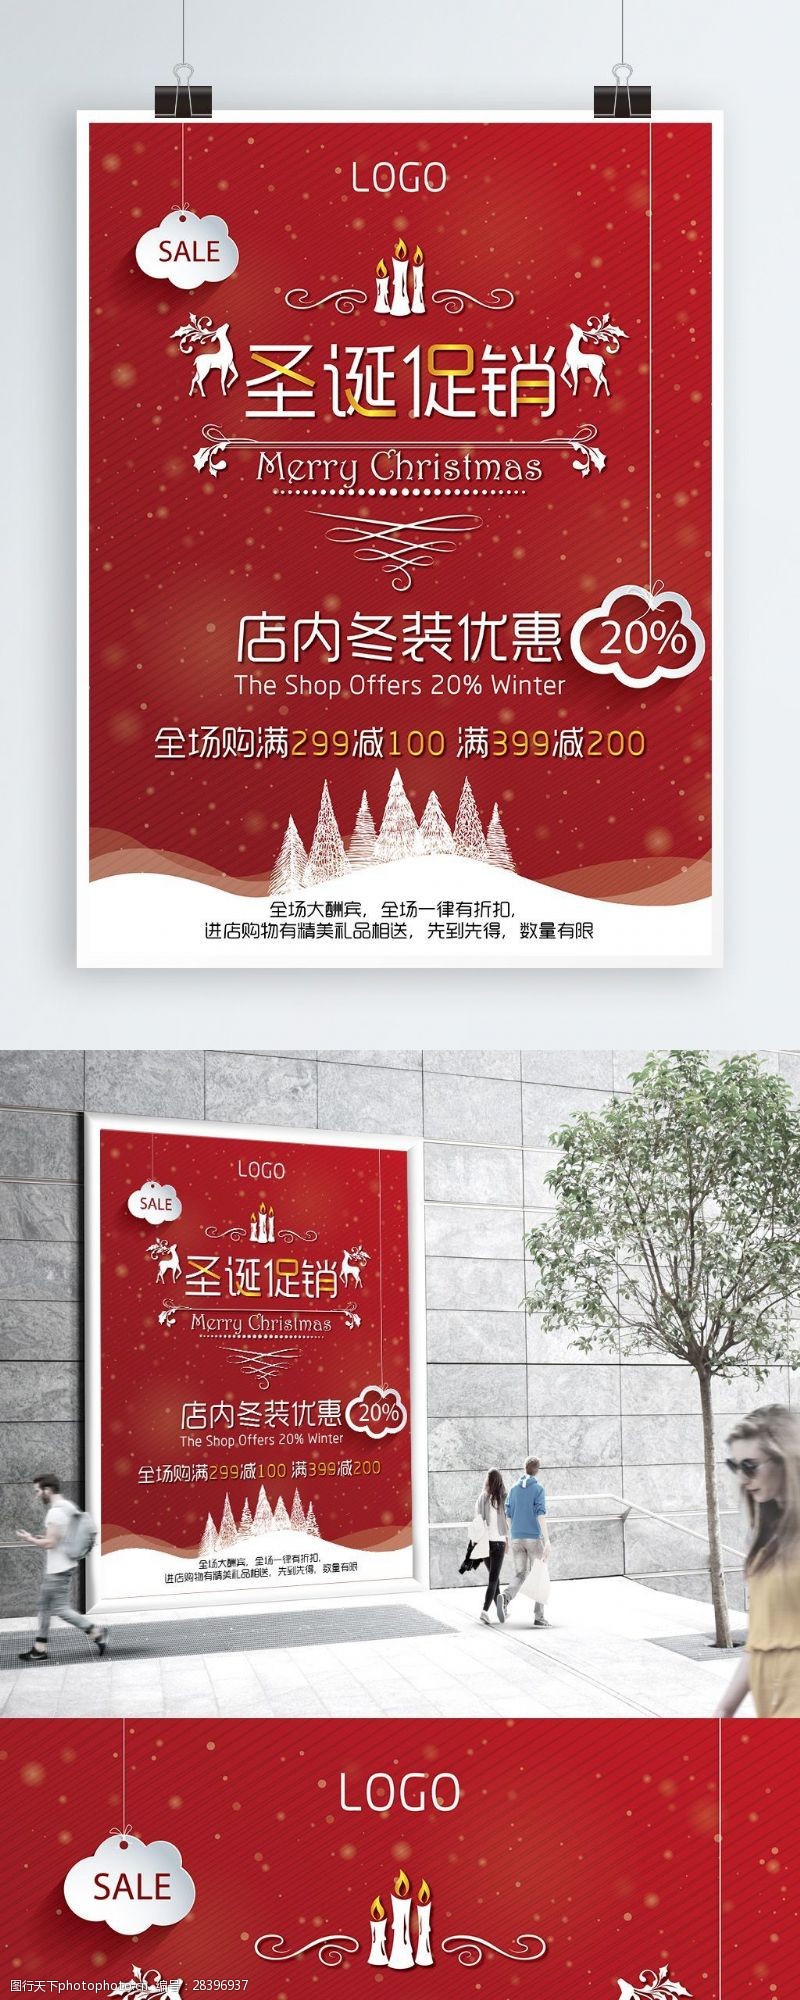 满减红色背景圣诞节促销活动海报设计